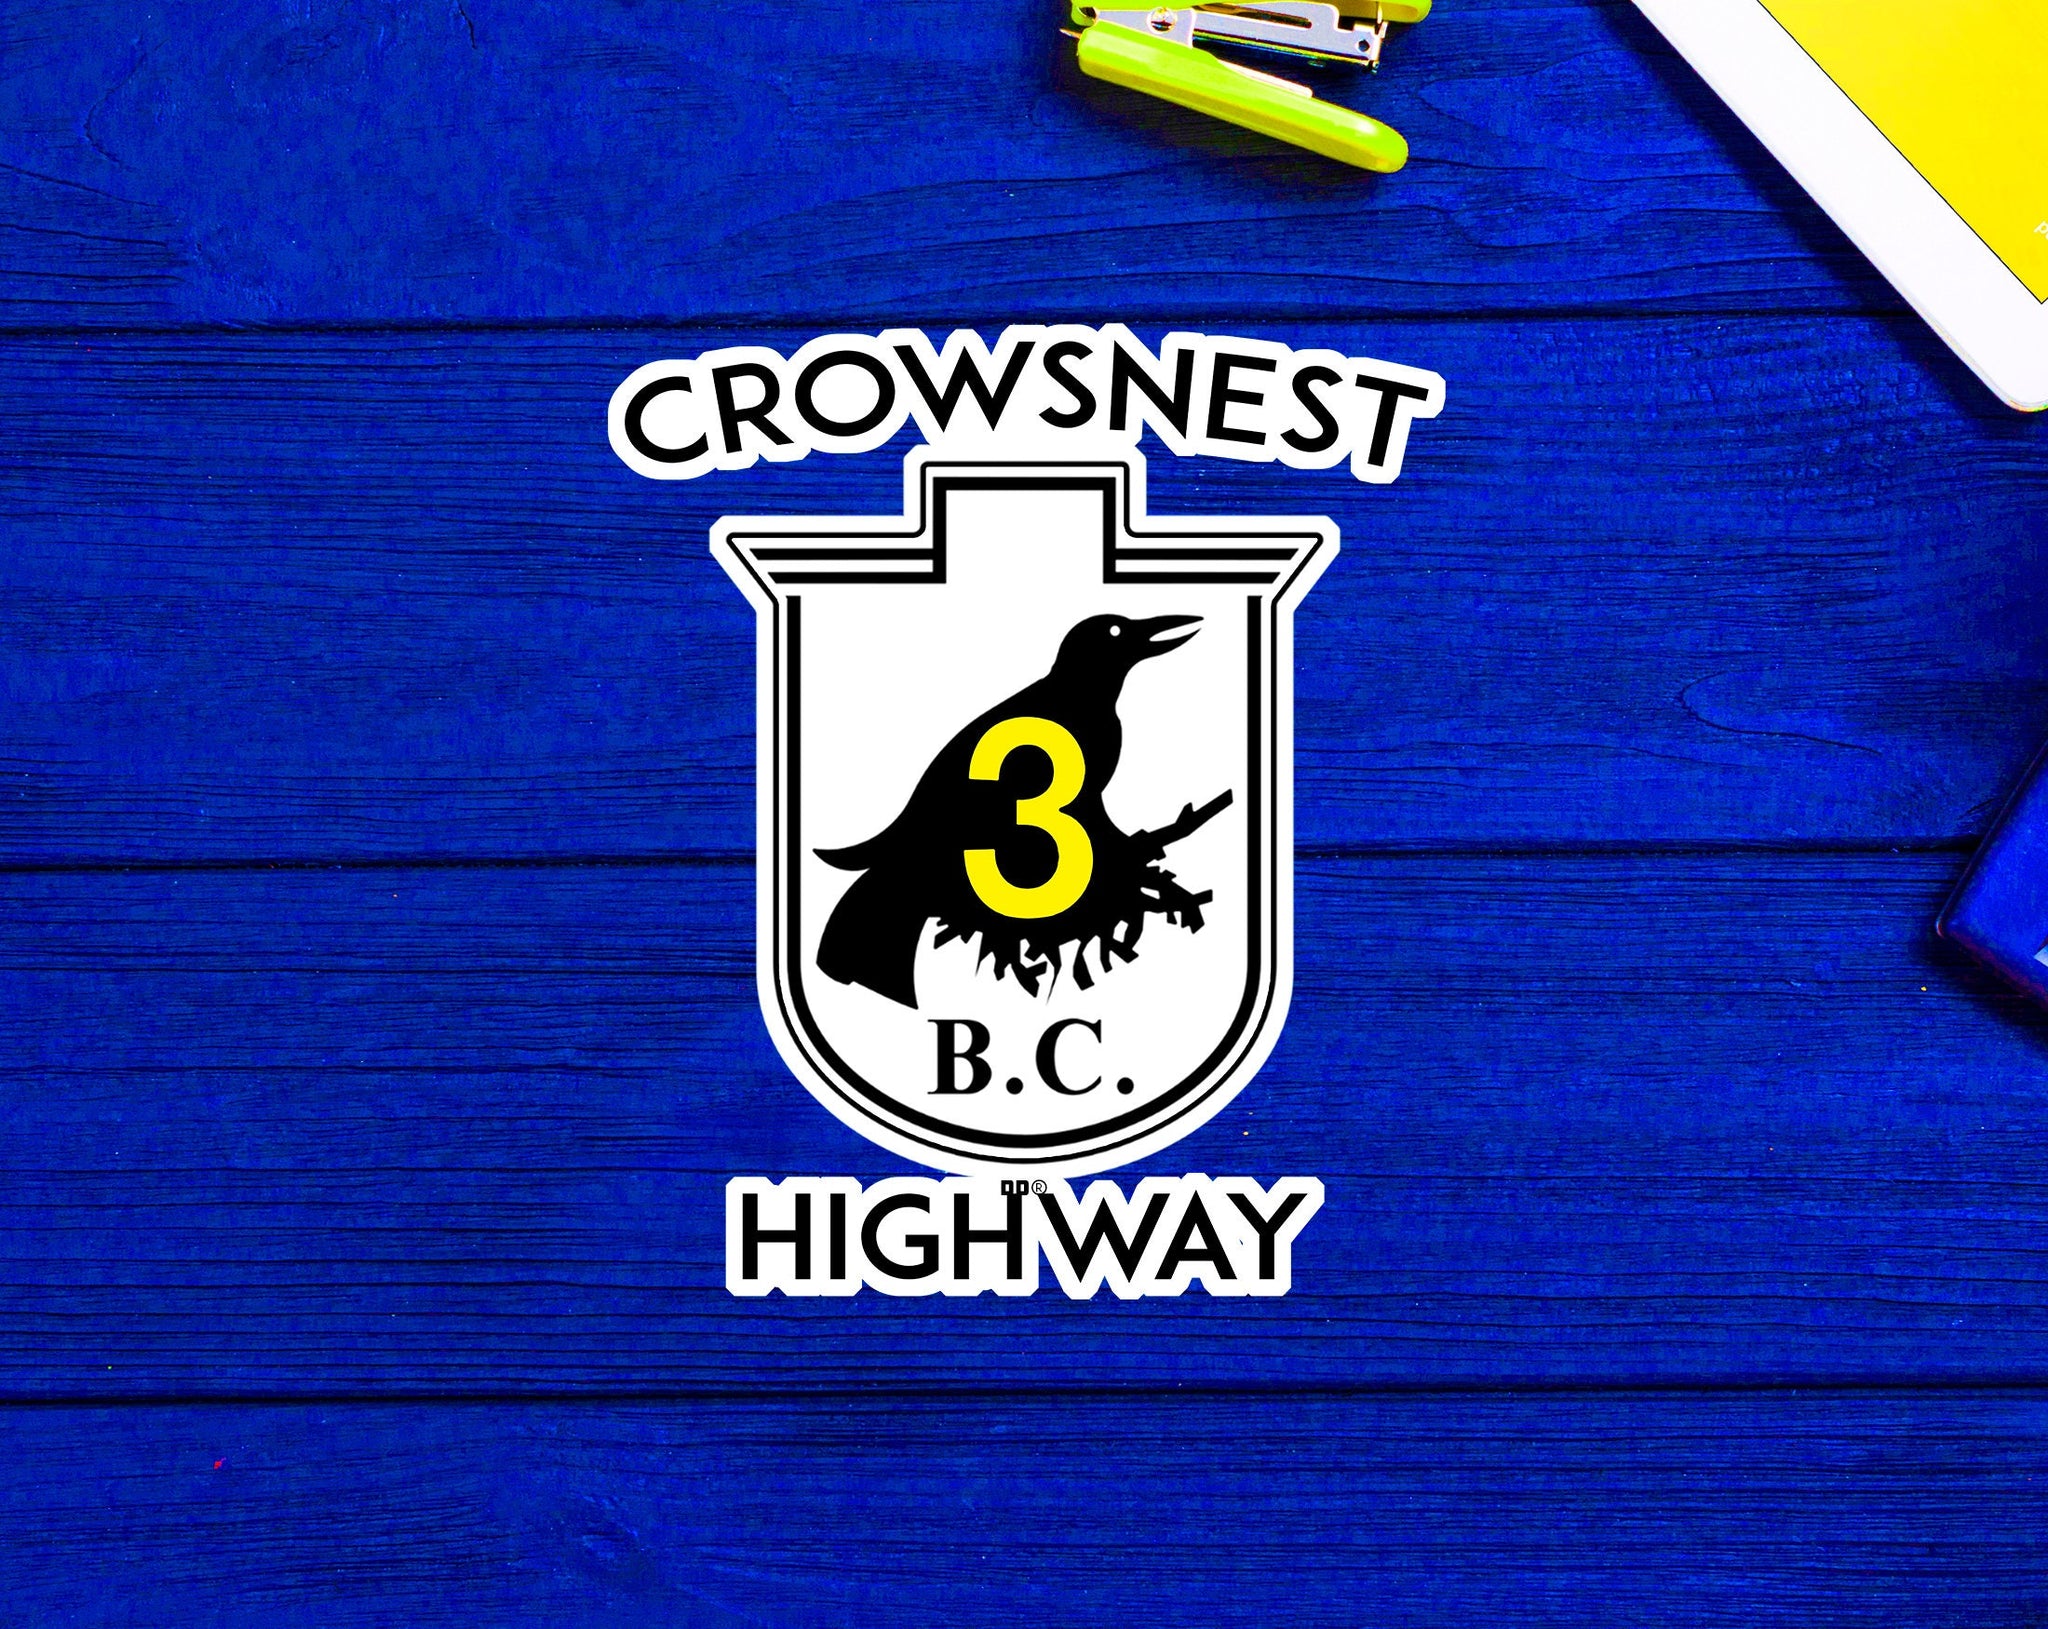 Crowsnest Highway British Columbia Canada 3 Crows Nest BC Sticker 3" x 3.5"